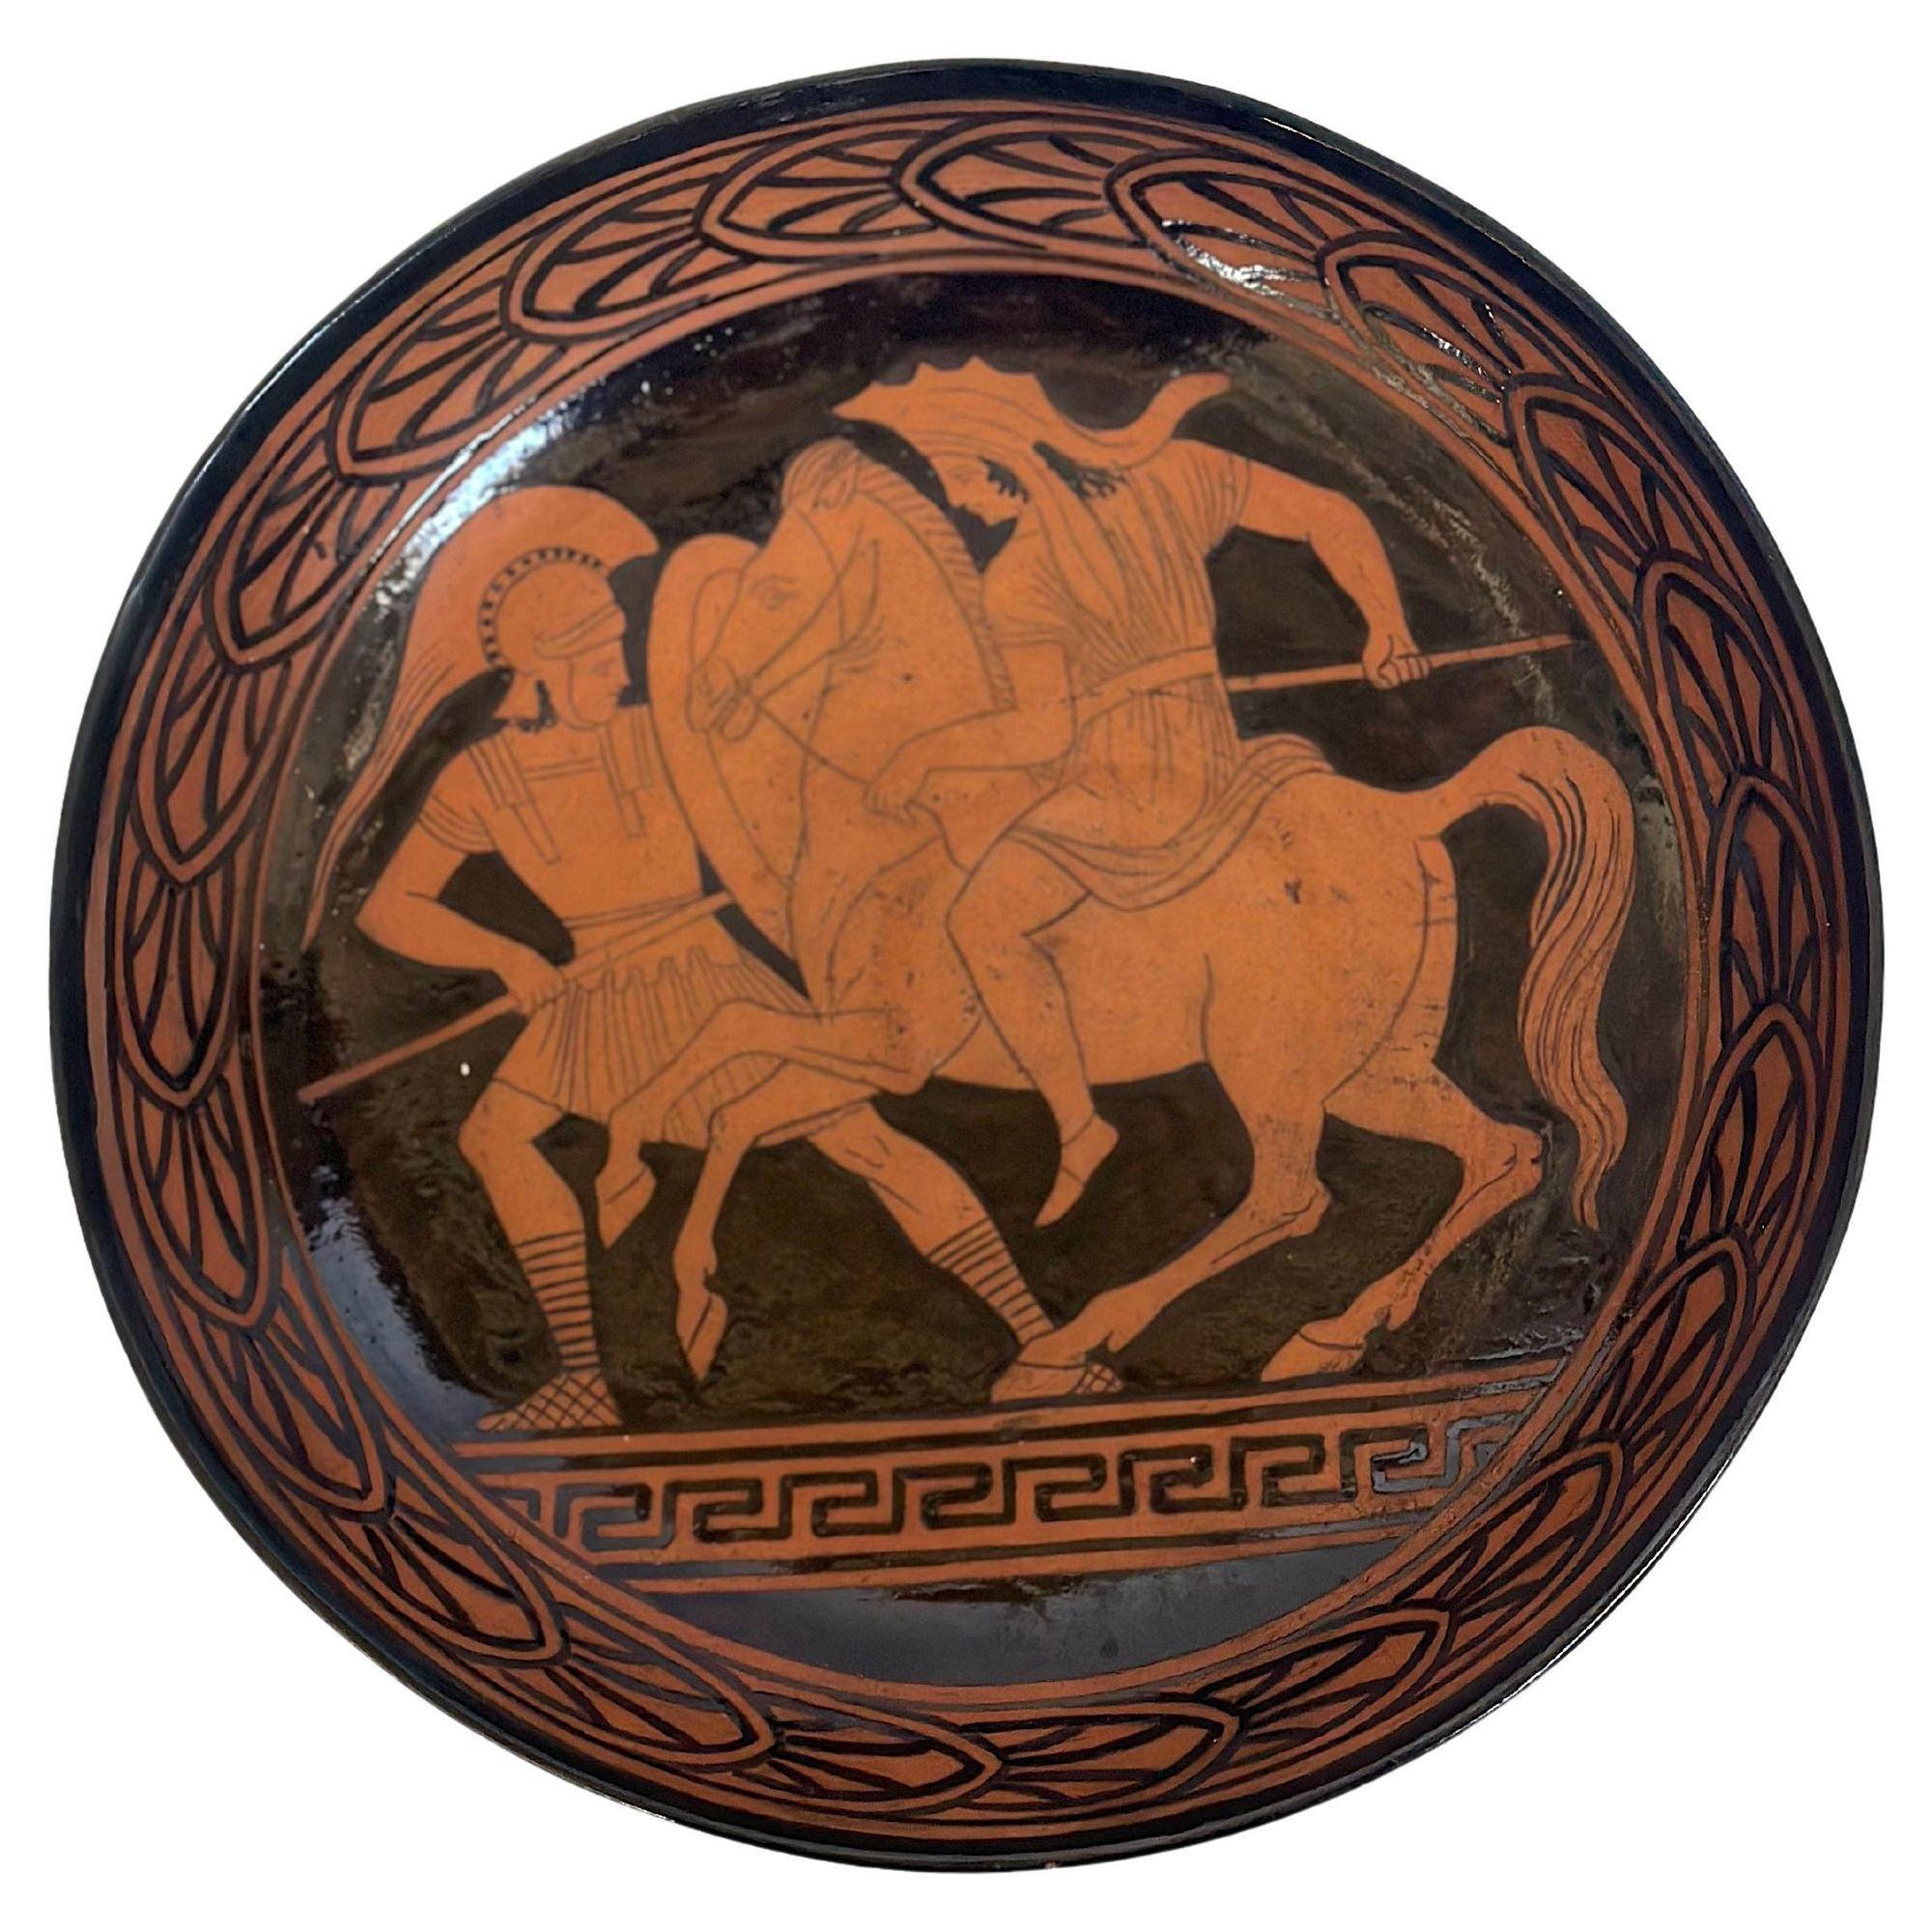 Satz von zwei traditionellen griechischen Keramikservierern, bestehend aus einer Schale und einer quadratischen Schale mit traditionellen Motiven.
Abmessungen:
Runde Schale: 1,5 